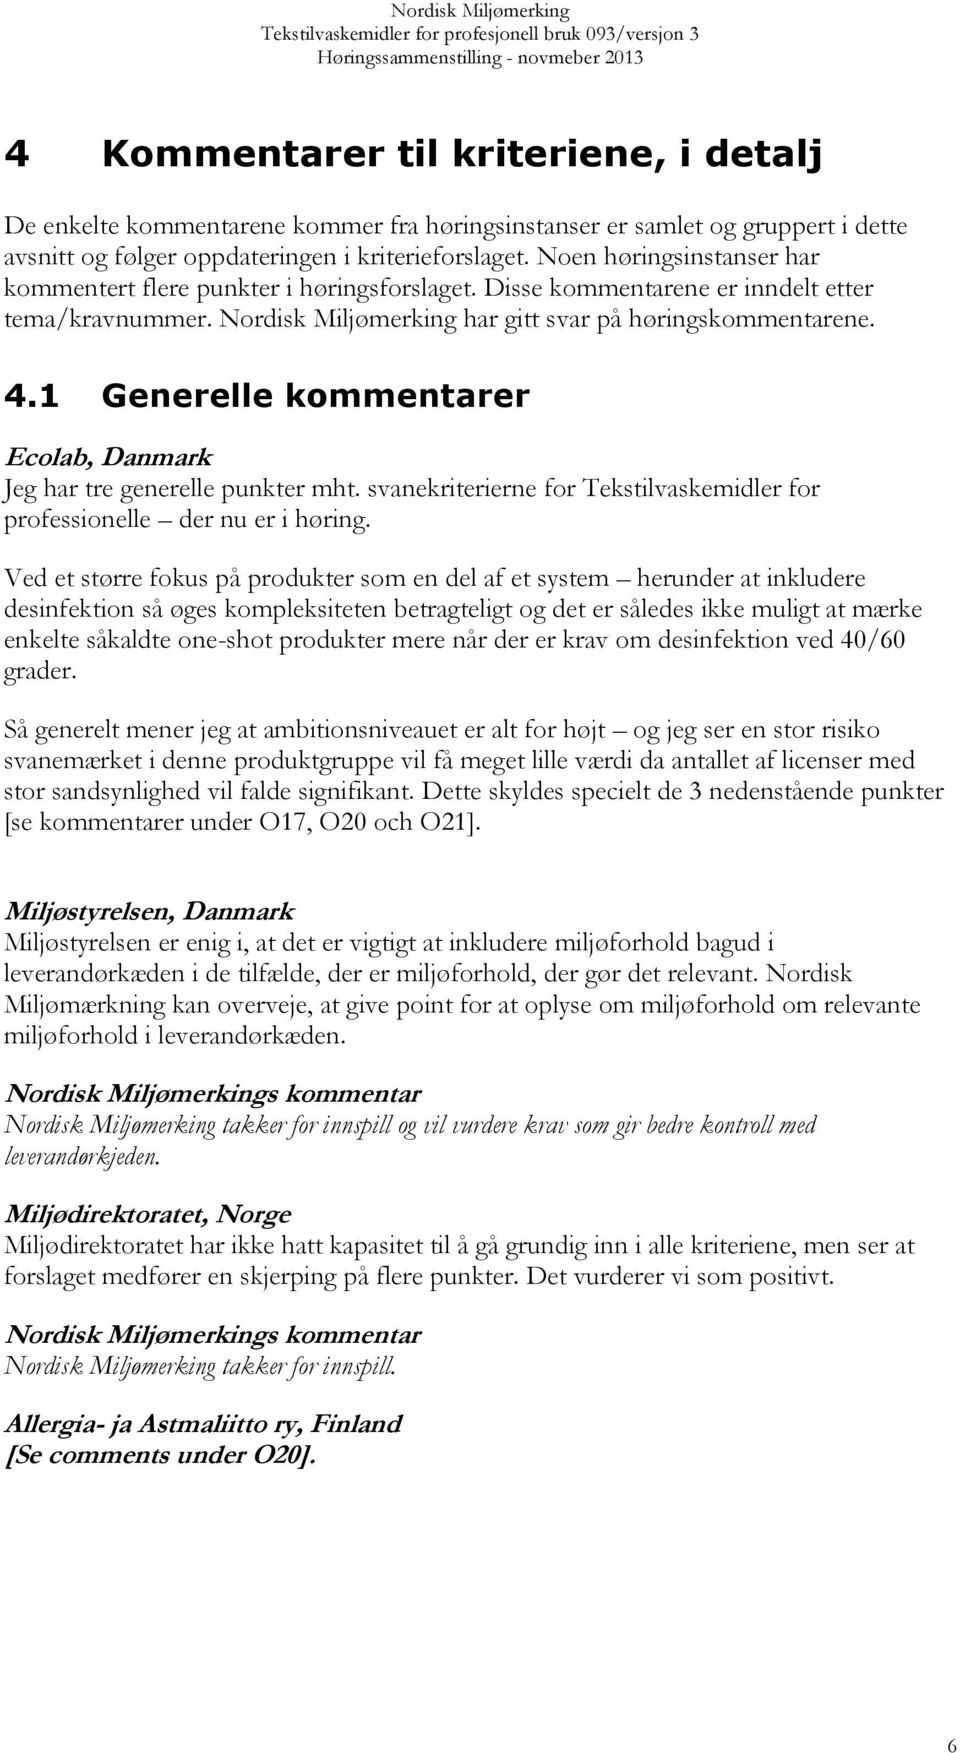 1 Generelle kommentarer Ecolab, Danmark Jeg har tre generelle punkter mht. svanekriterierne for Tekstilvaskemidler for professionelle der nu er i høring.